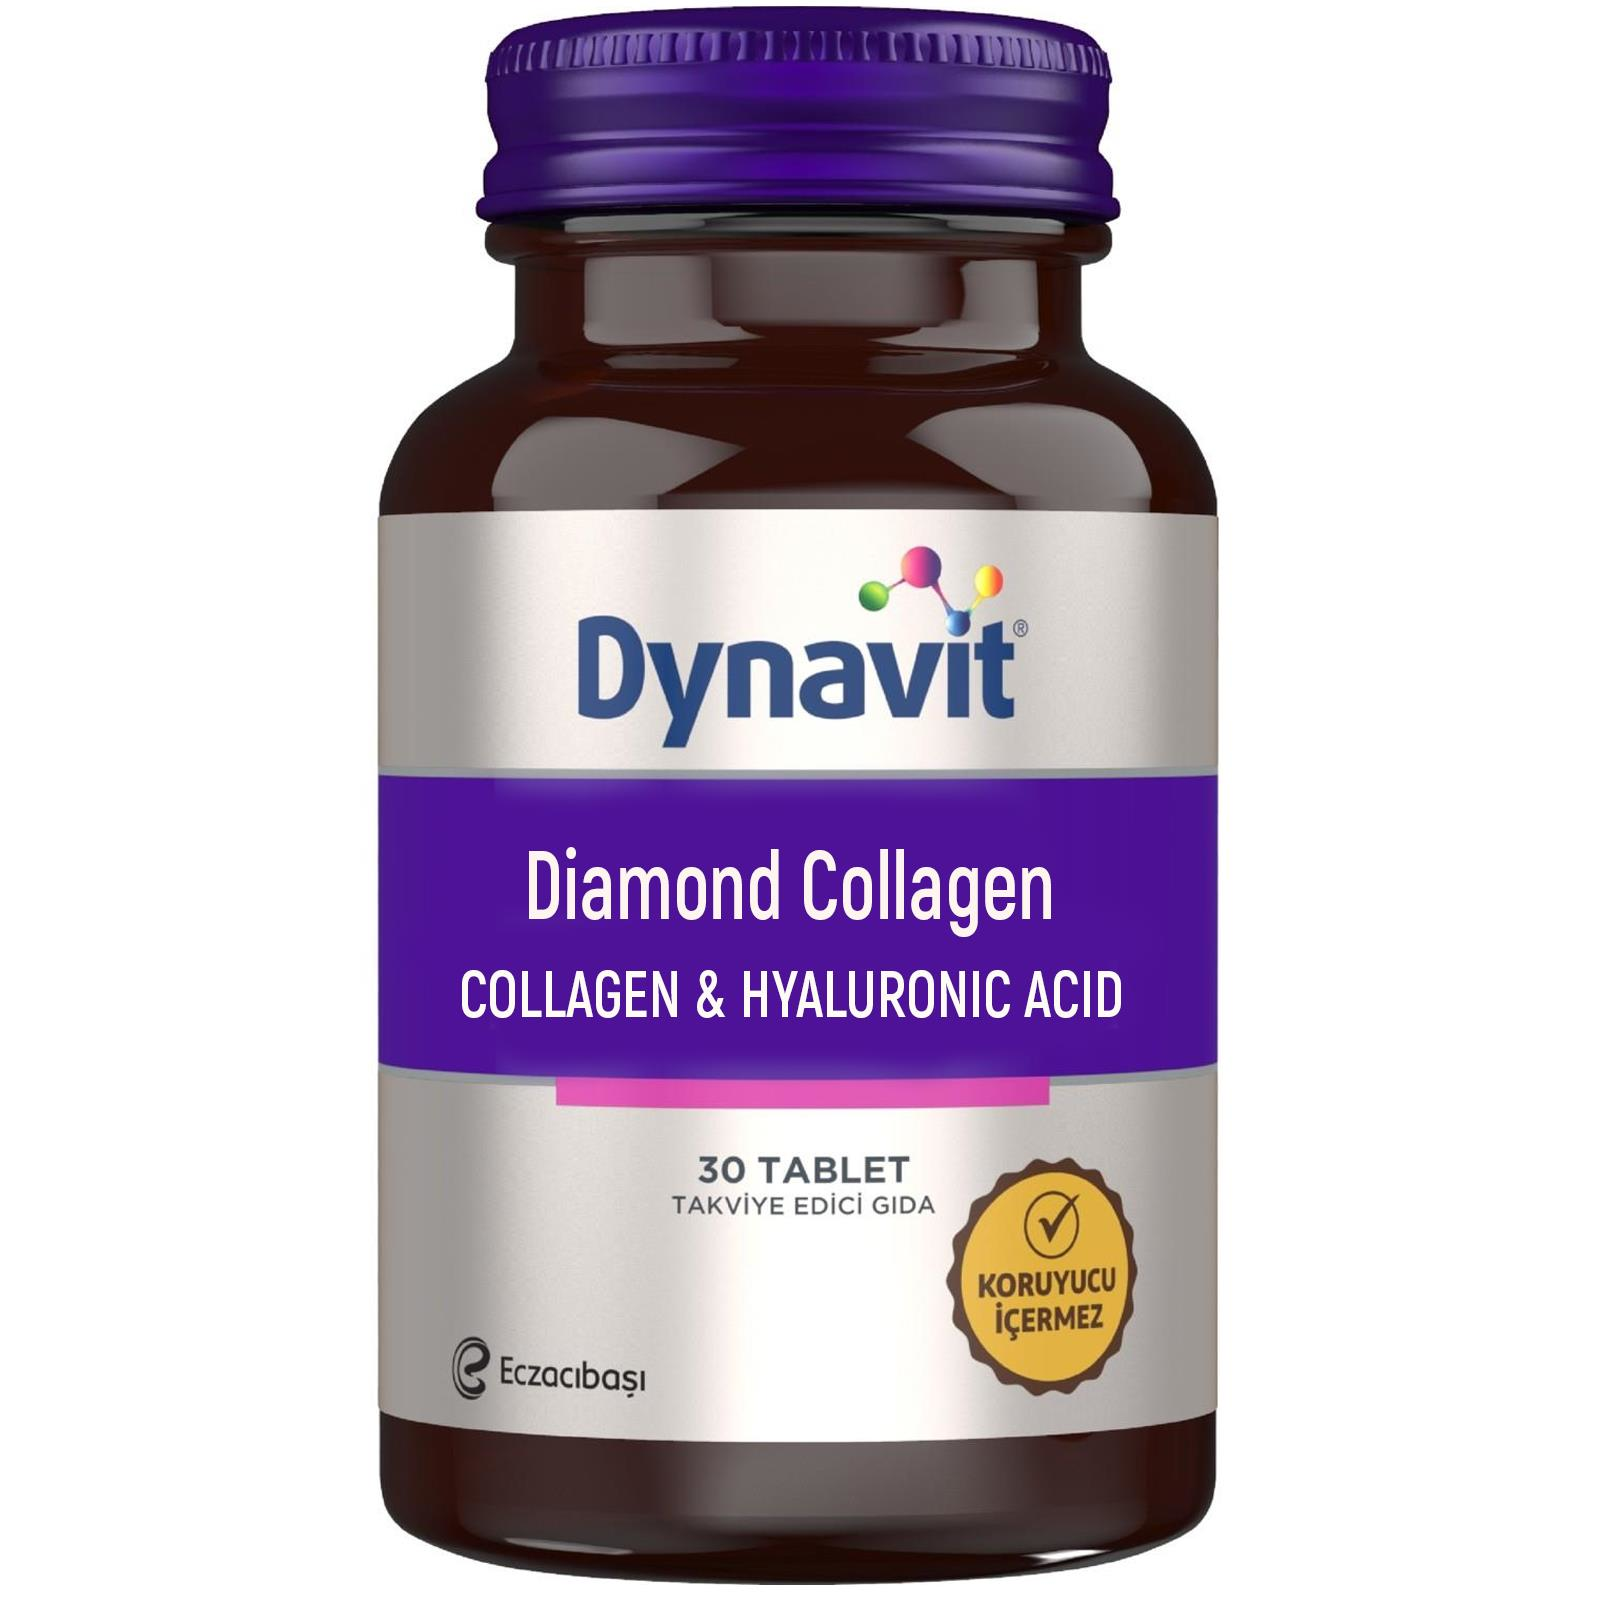 Dynavit Diamond Collagen Hyaluronic Acid 30 Tablet